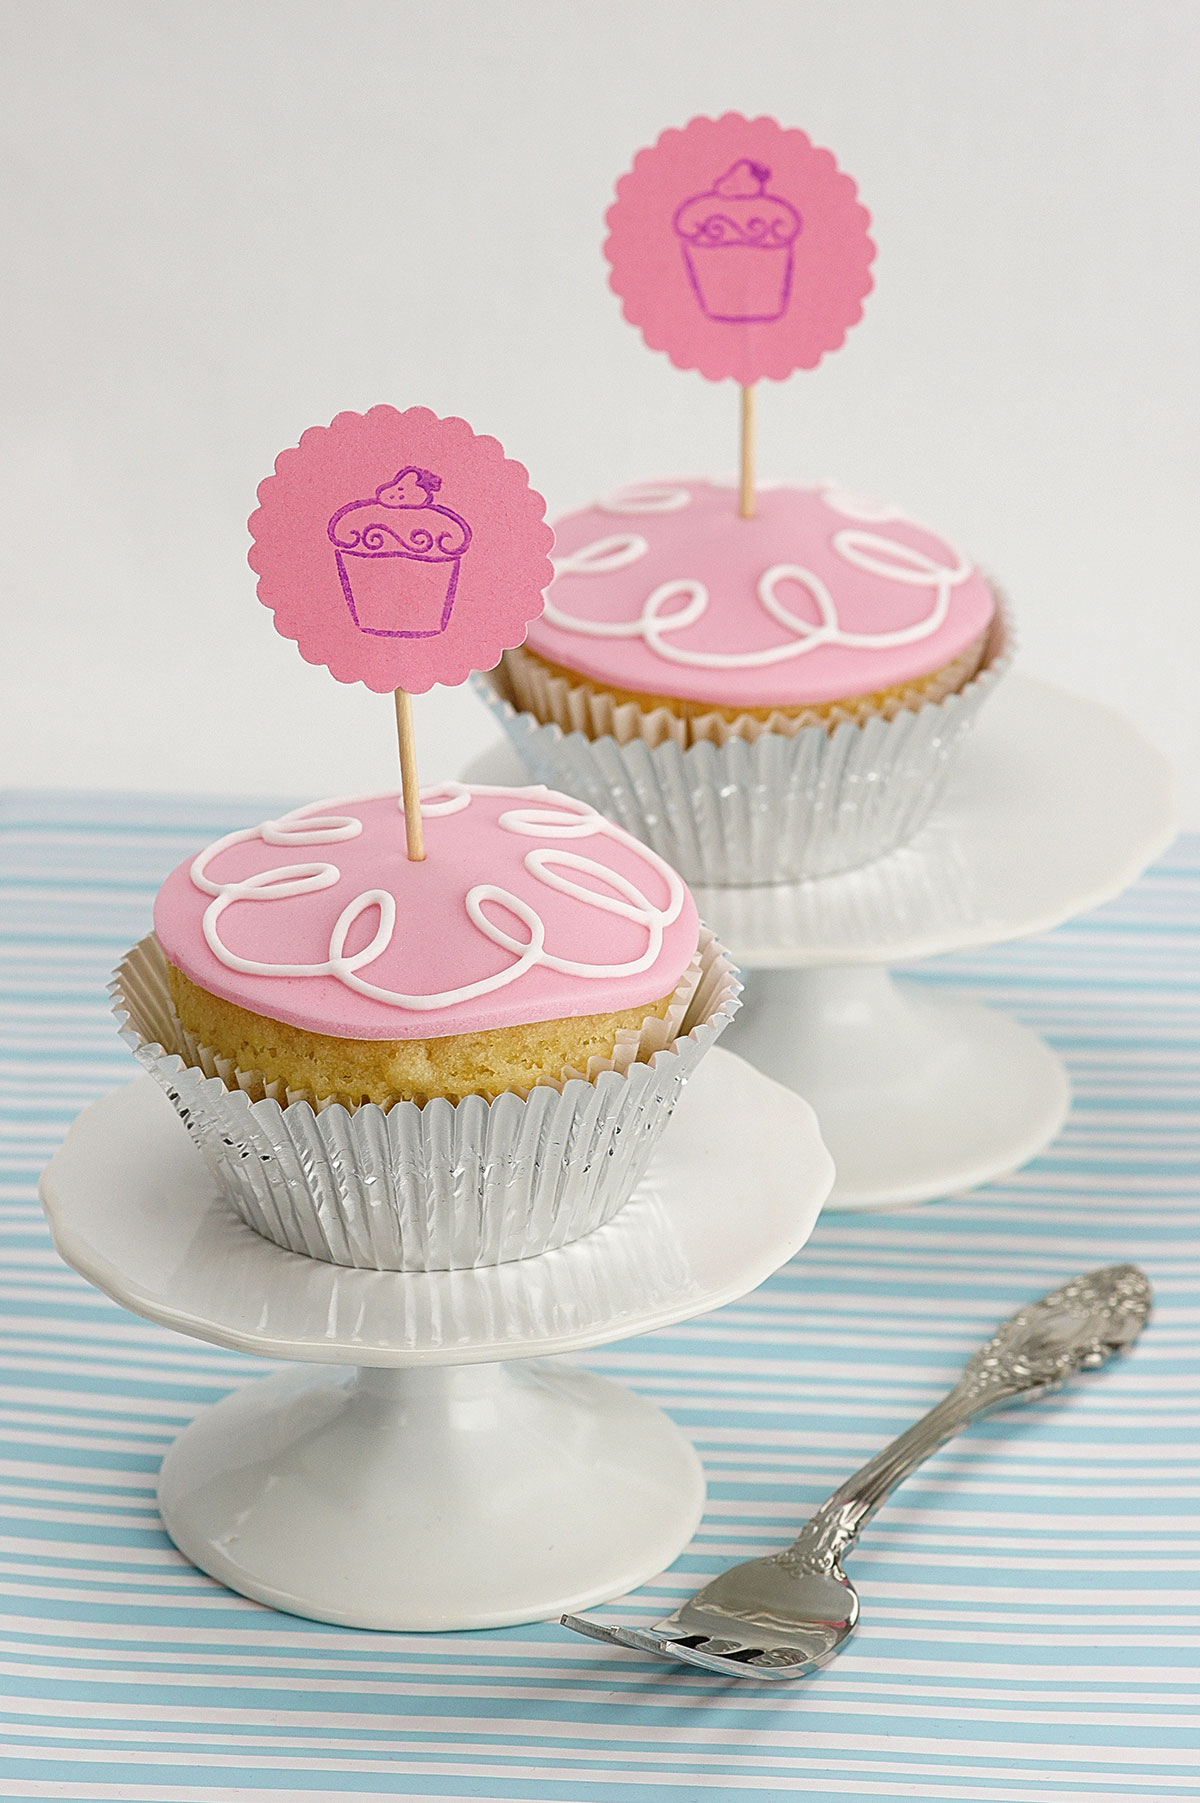 Vupcakes mit rosanem Frosting, weißem Zuckerguss-Dekor und rosanen Toppern